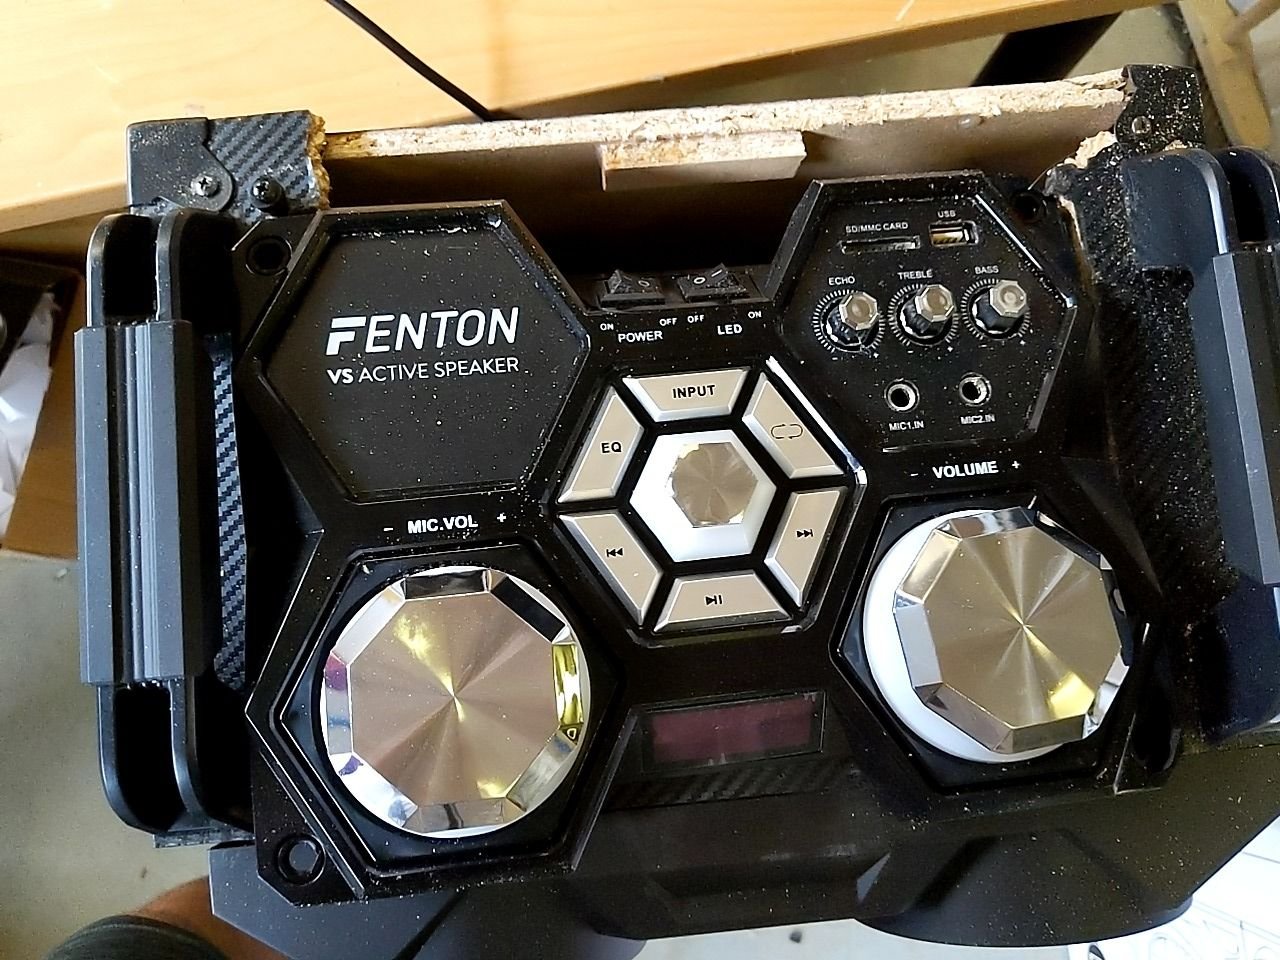 Reproduktor Fenton VS210